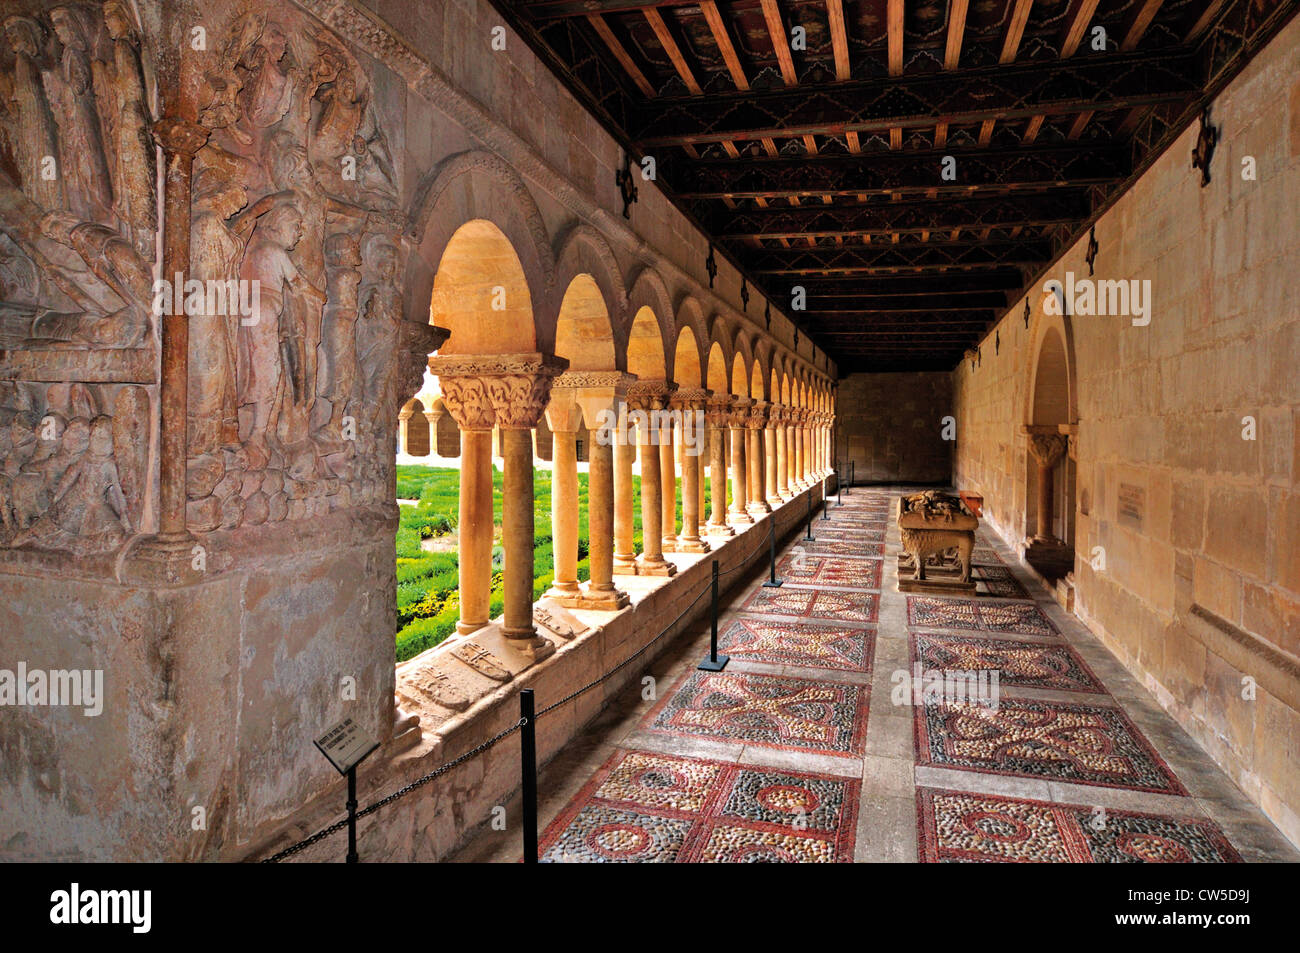 España: claustro románico del Monasterio de Santo Domingo de Silos Foto de stock